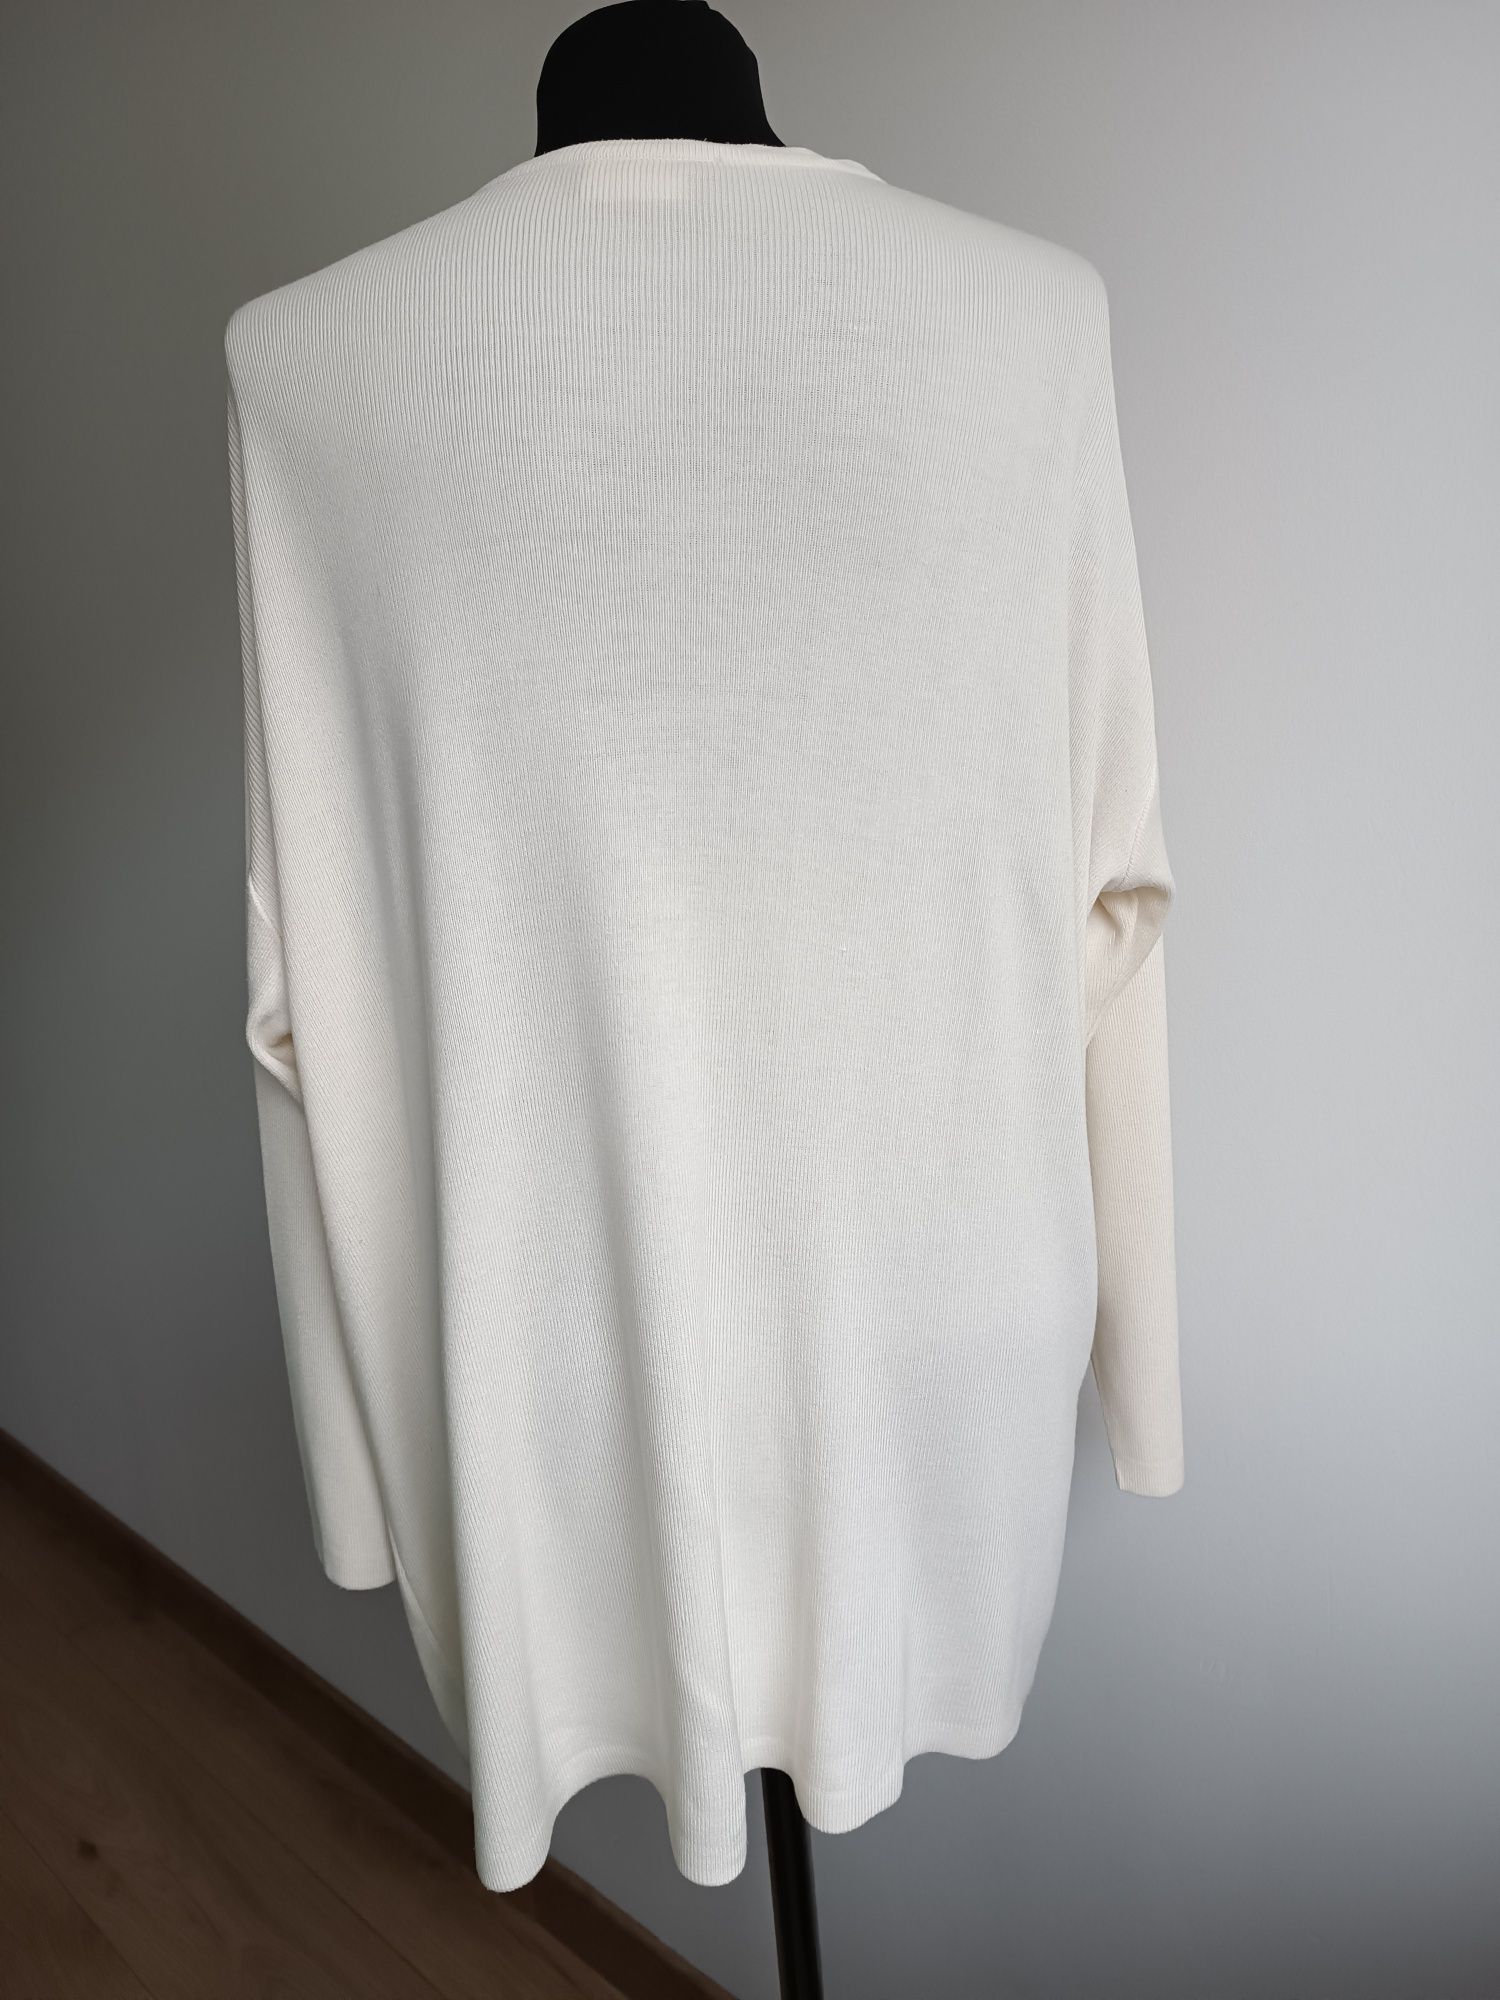 Kremowy śmietankowy kardigan sweterek na jeden guzik L XL XXL